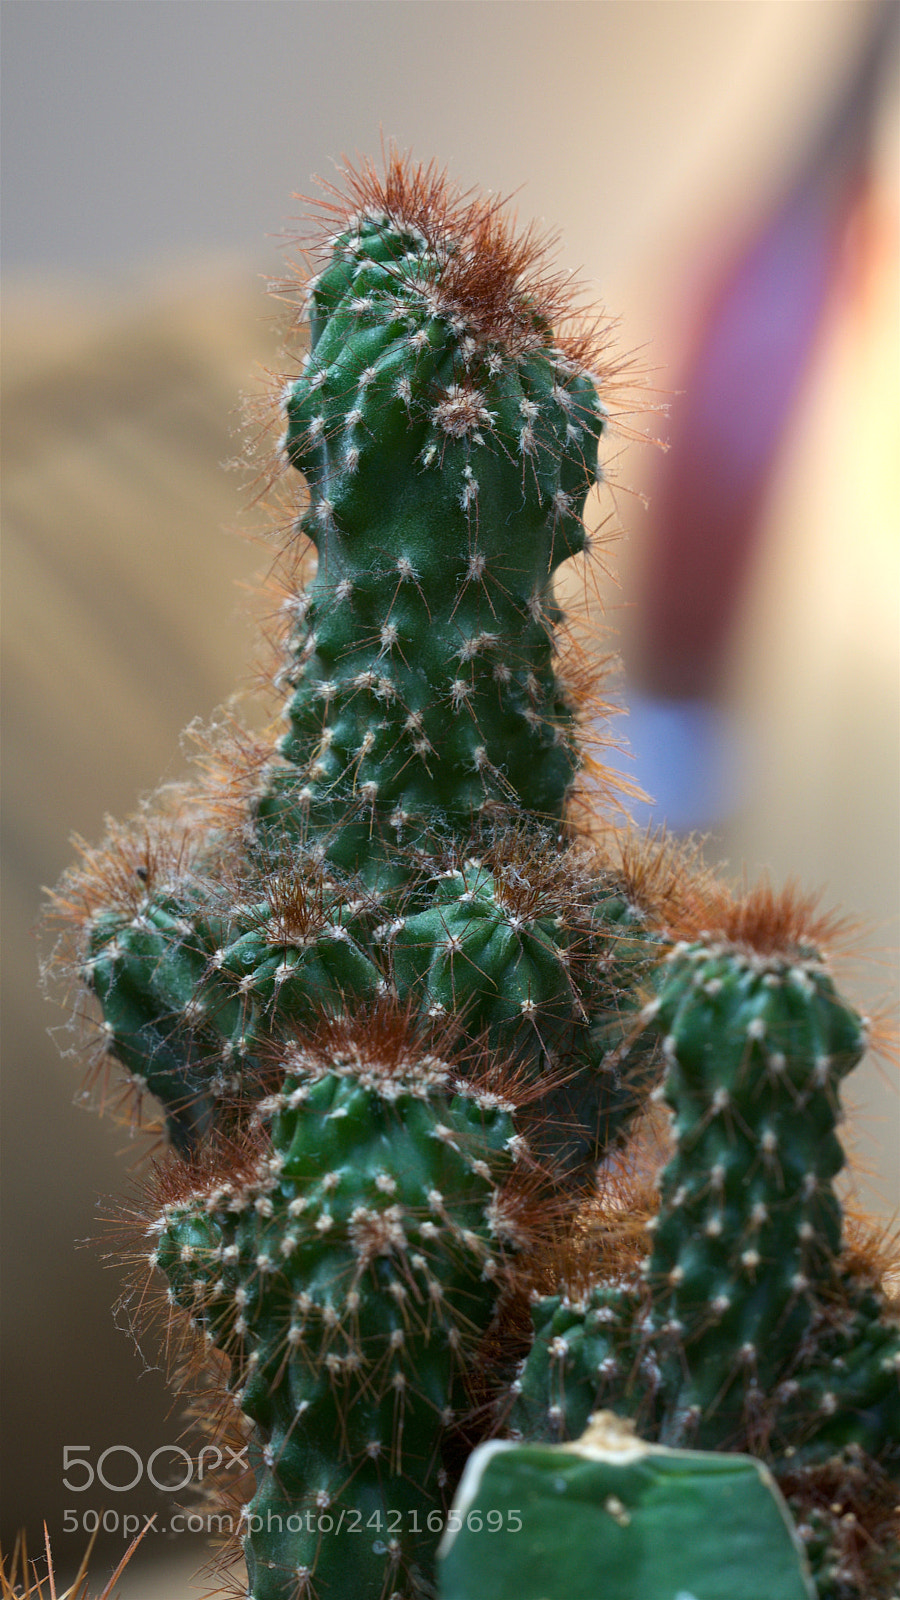 Nikon D5300 sample photo. Cactus photography